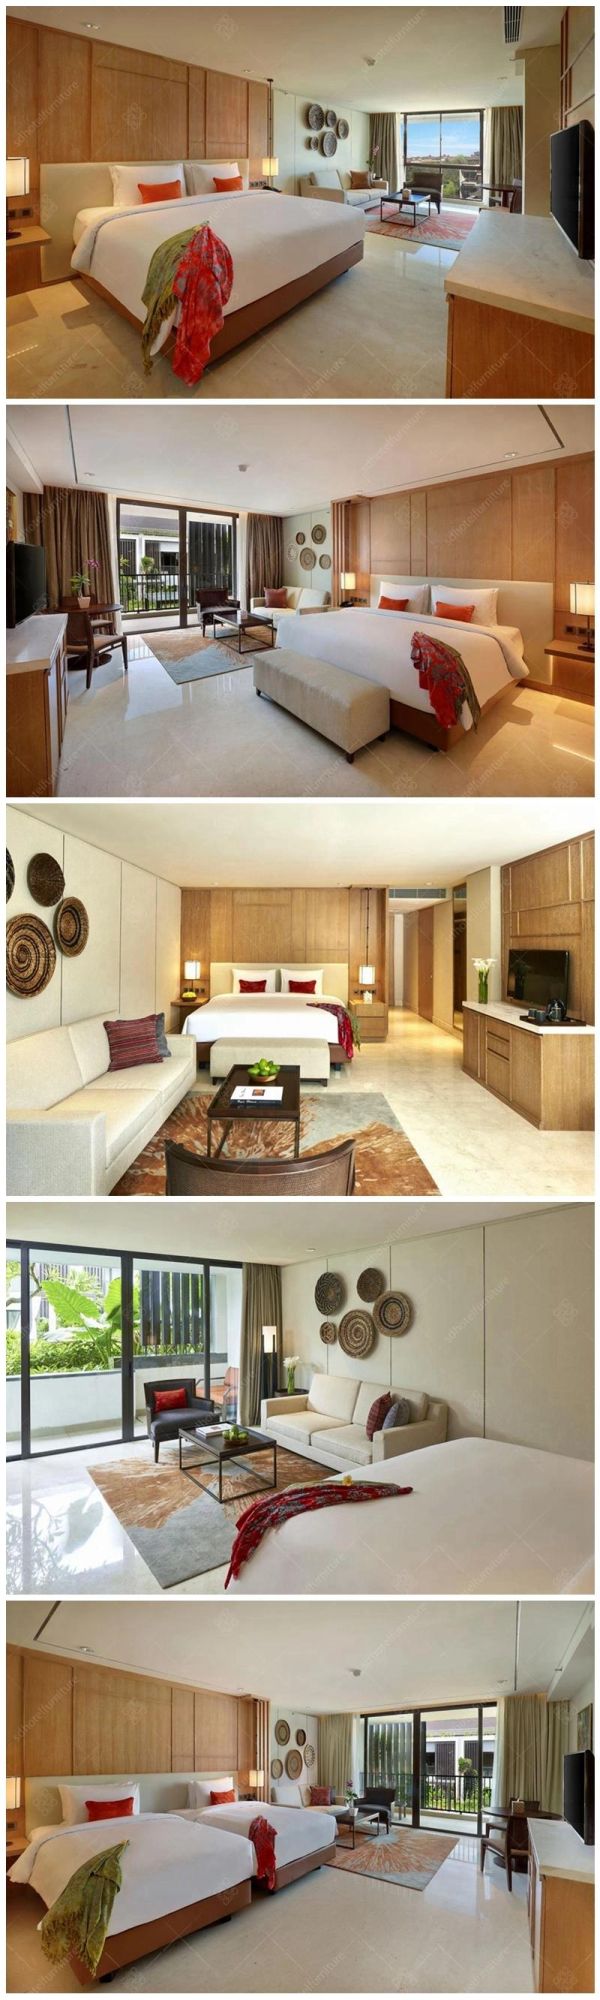 Modern Design Resort Hotel King Size Bedroom Furniture Sets Commercial Furniture Sets